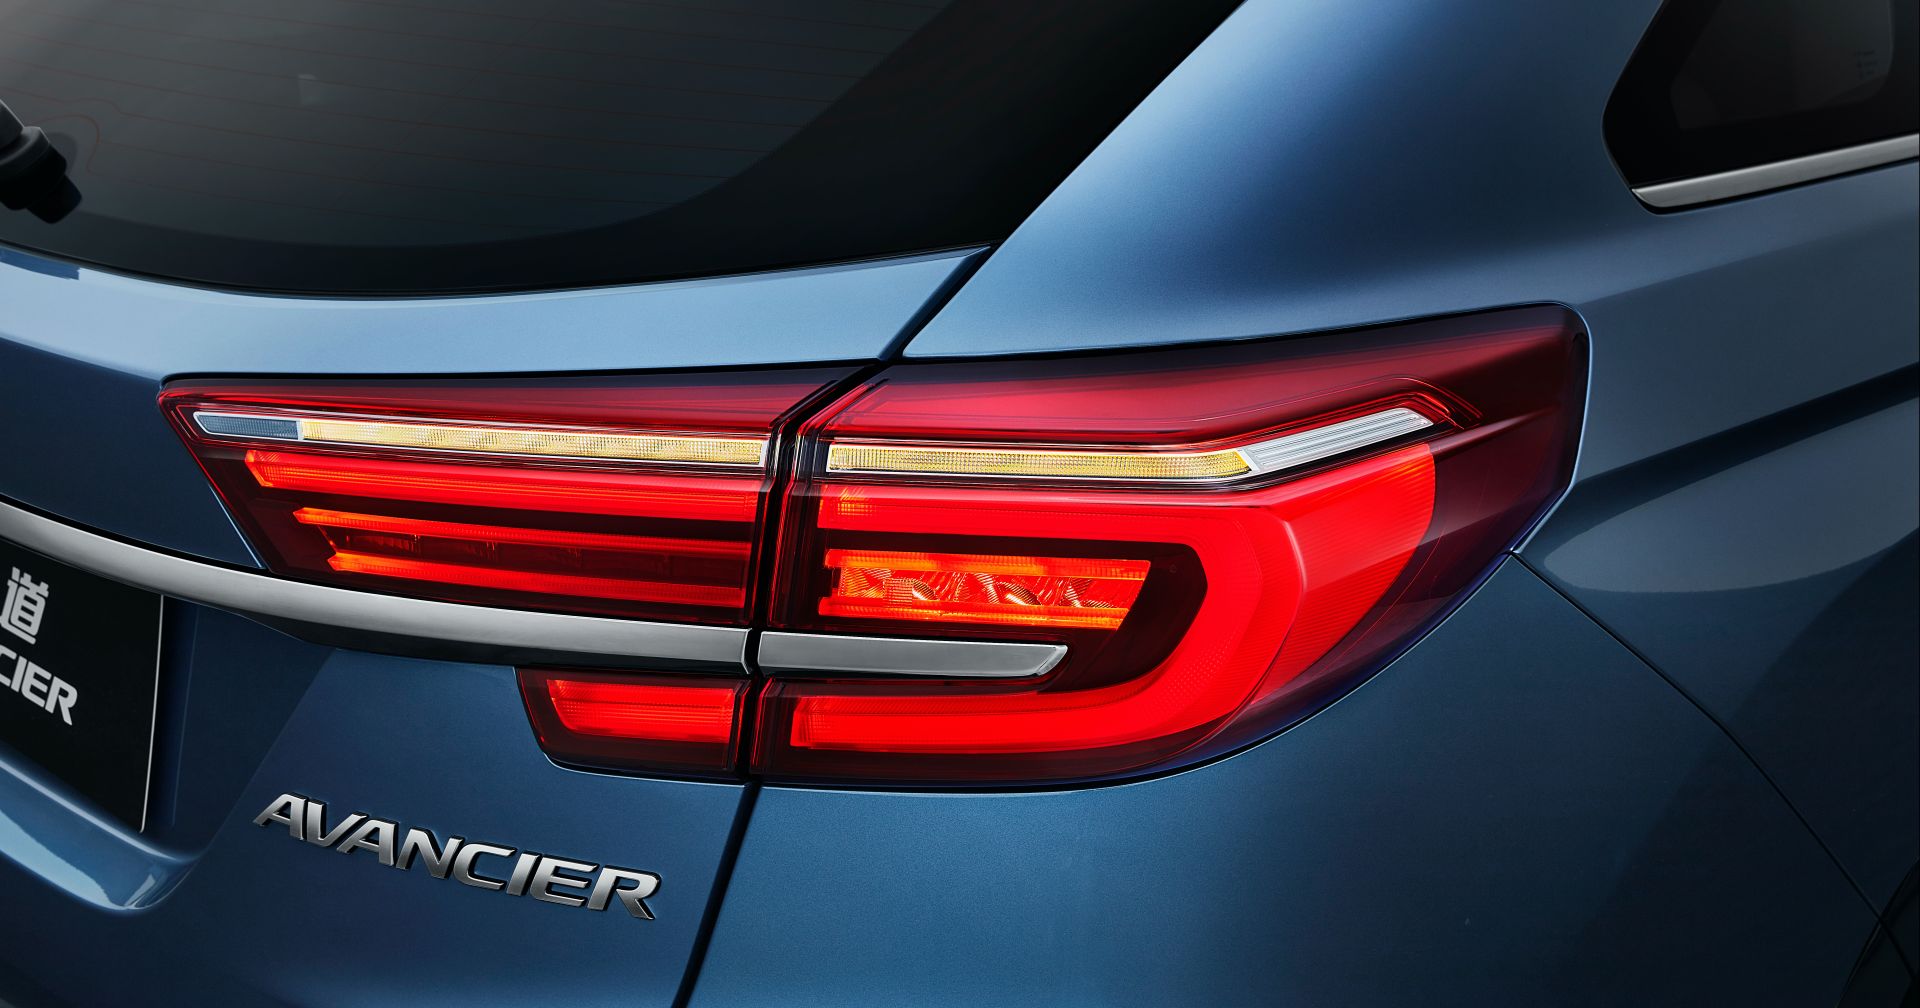 Mẫu SUV hàng đầu Avancier 2020 của Honda nhận được nâng cấp vượt trội